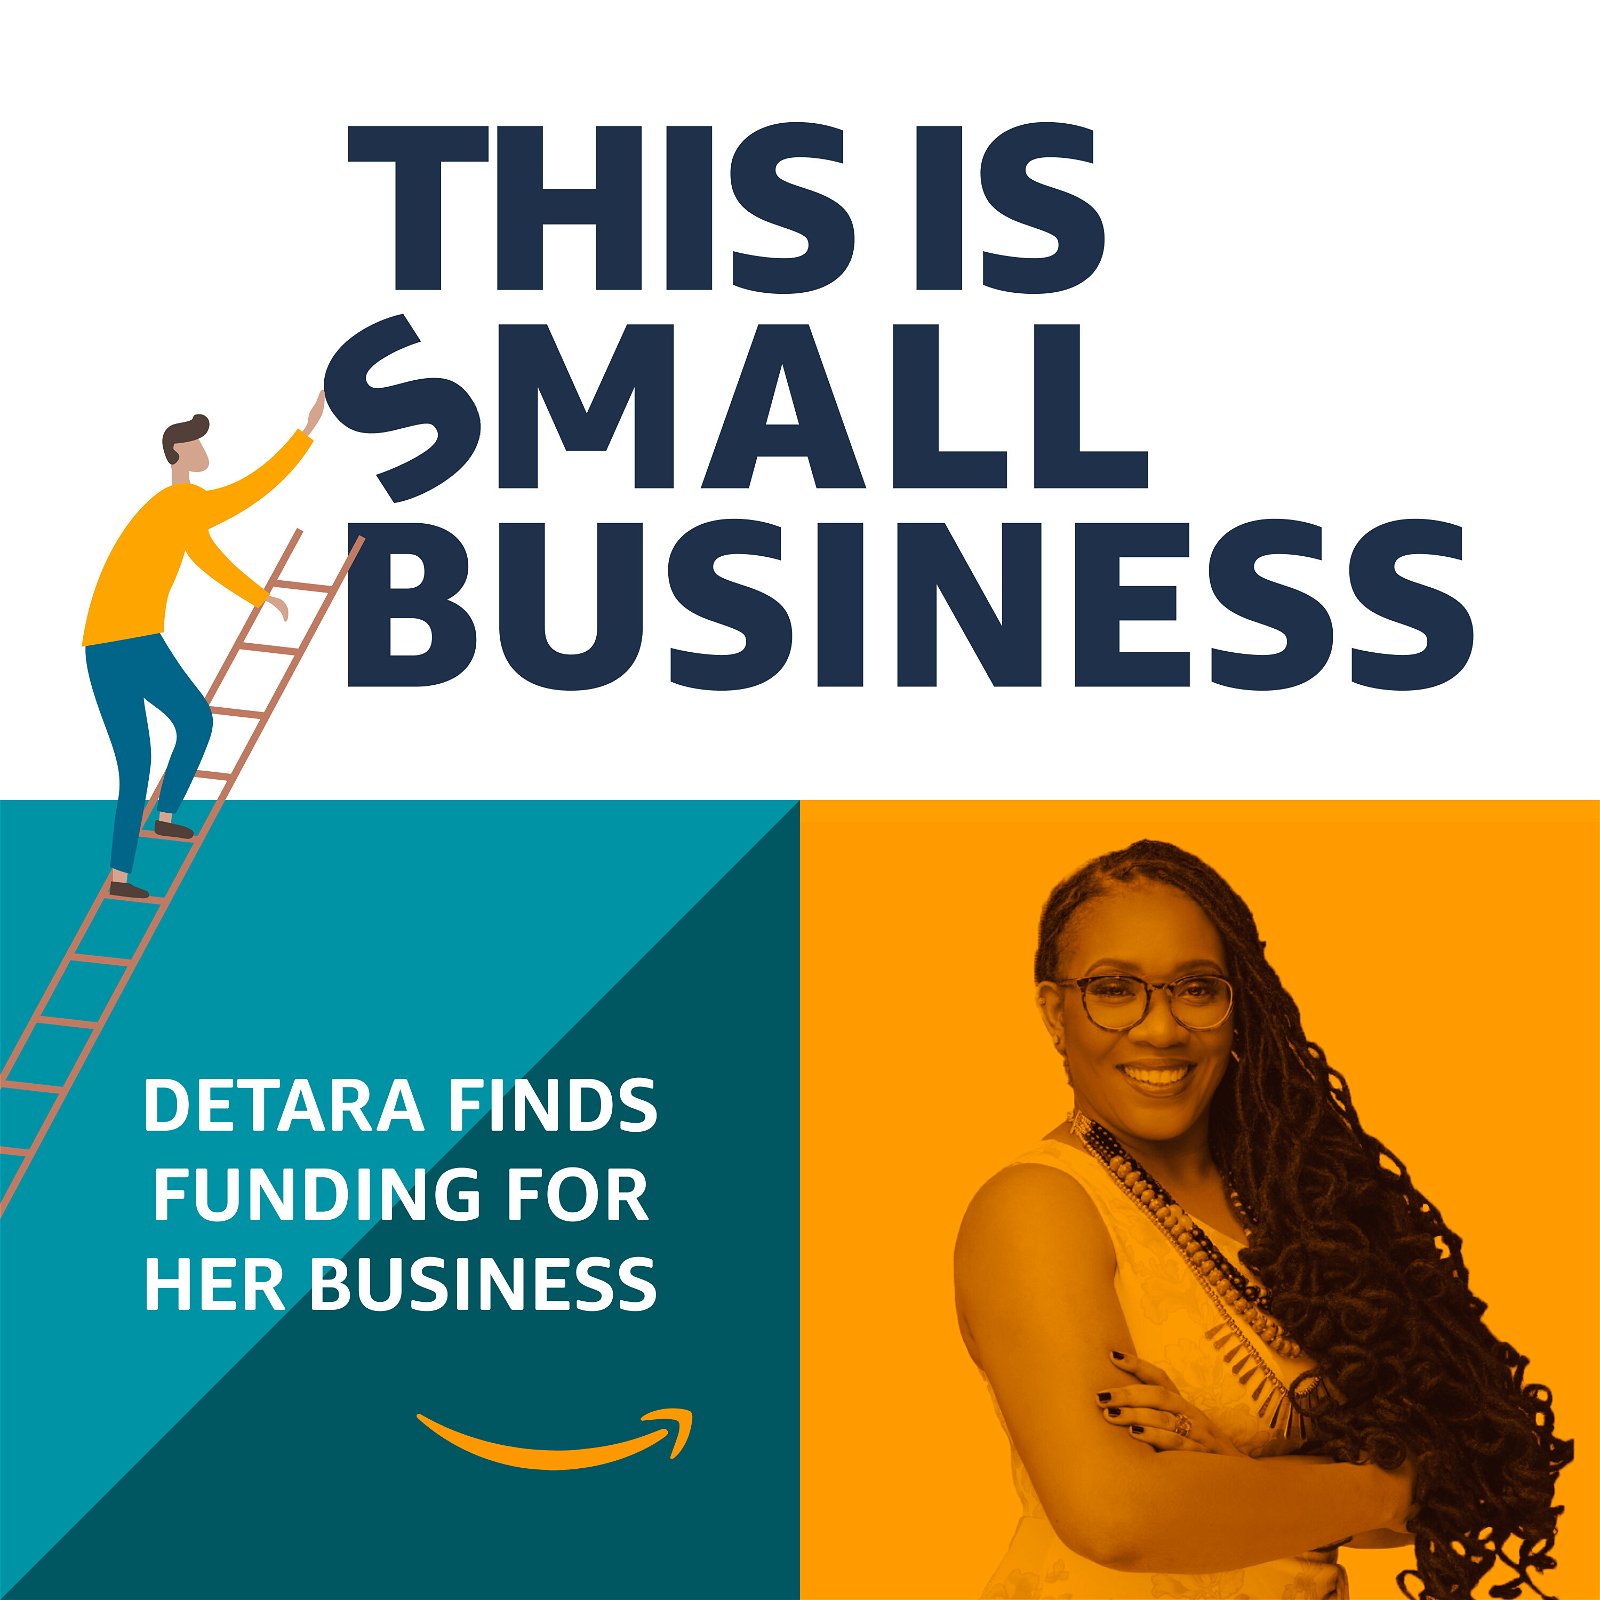 Detara Finds Funding for Her Business